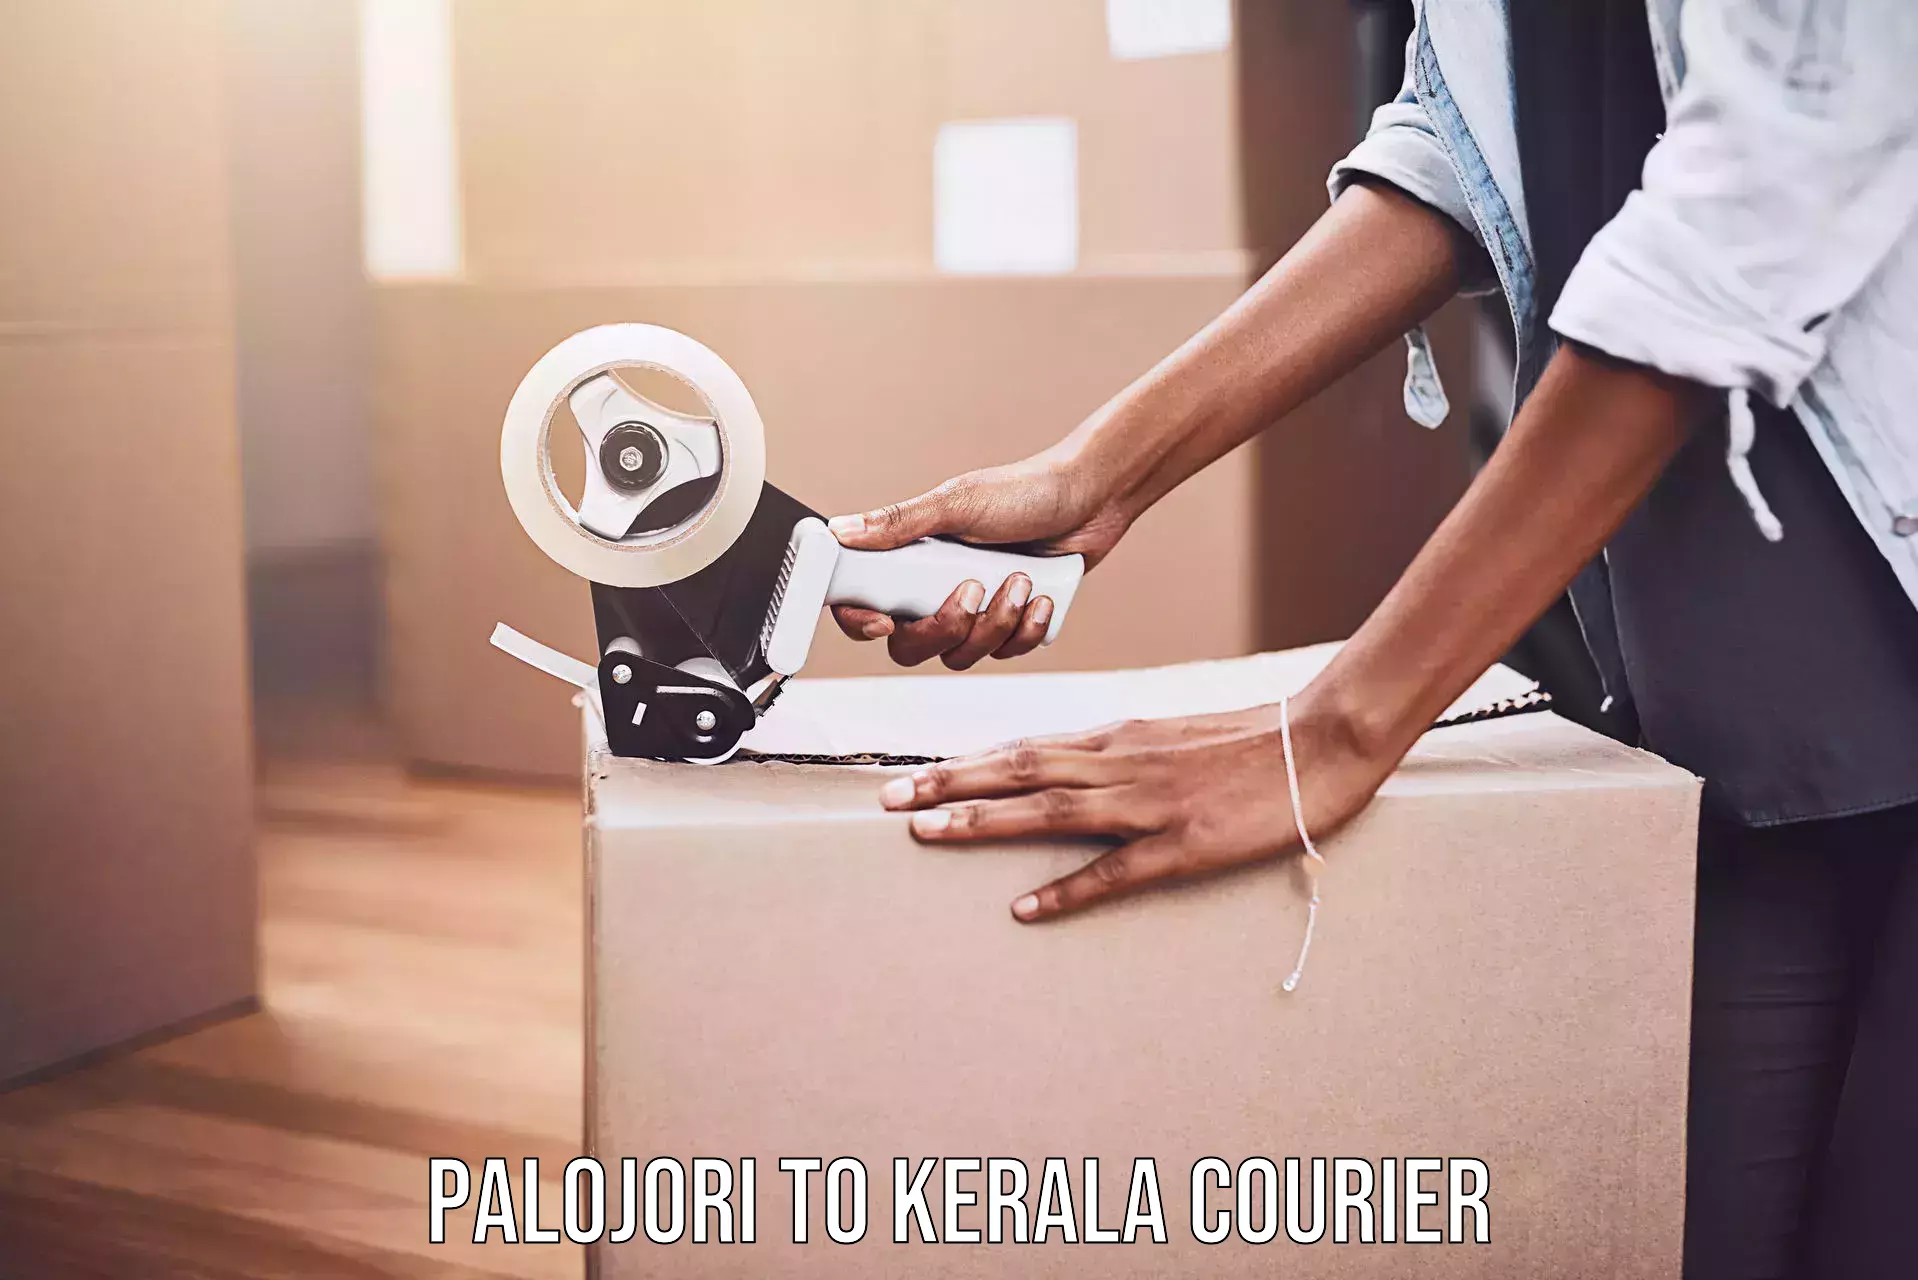 Global logistics network Palojori to Kannapuram